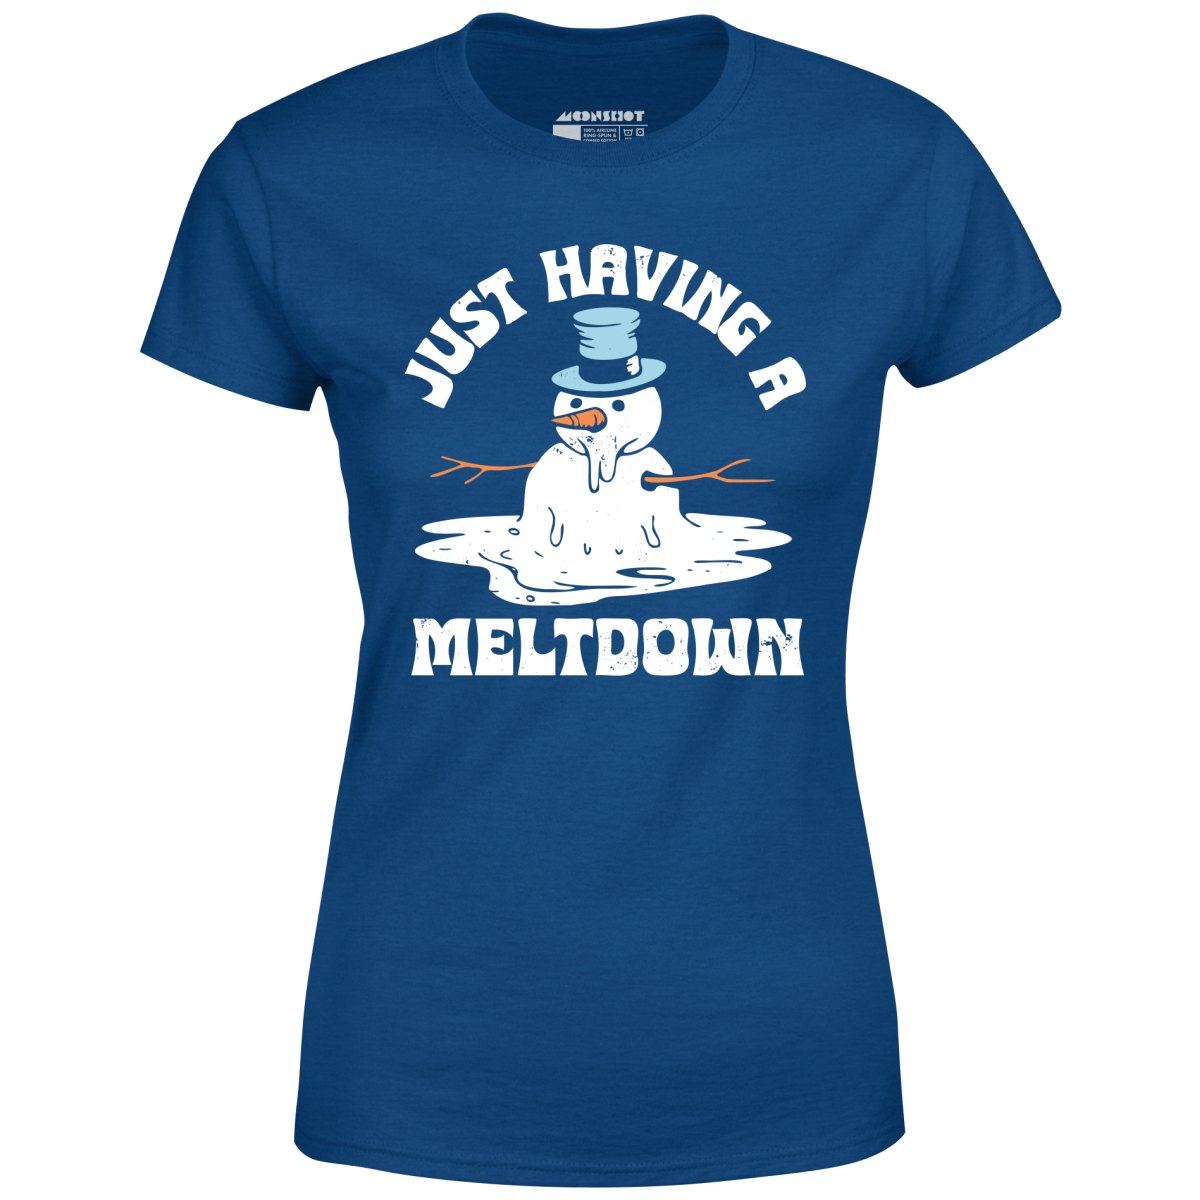 Just Having a Meltdown - Women's T-Shirt